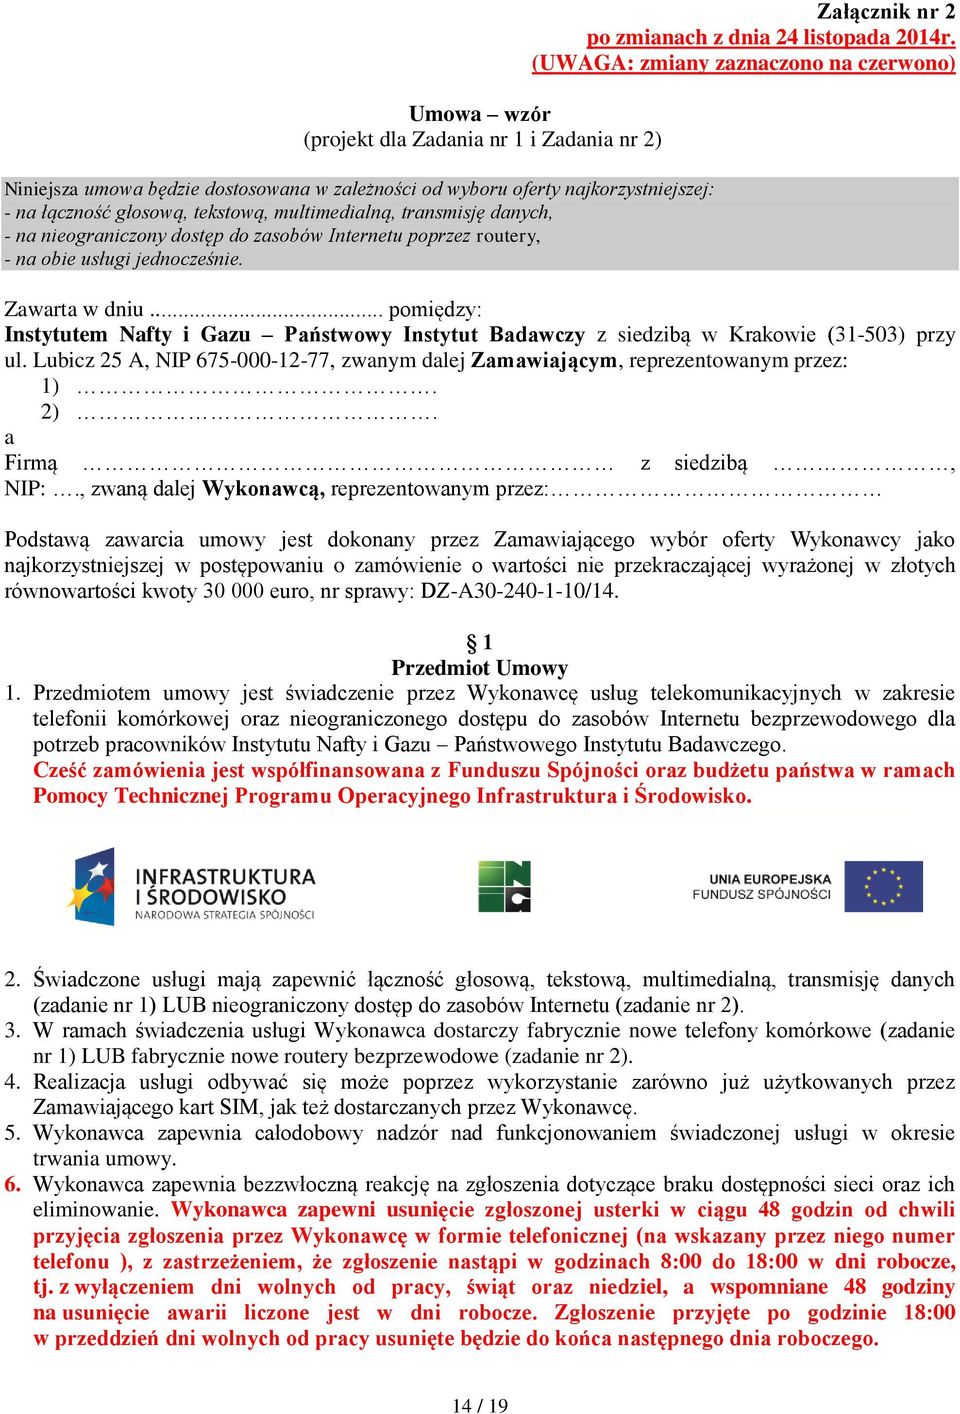 (UWAGA: zmiany zaznaczono na czerwono) Zawarta w dniu... pomiędzy: Instytutem Nafty i Gazu Państwowy Instytut Badawczy z siedzibą w Krakowie (31-503) przy ul.